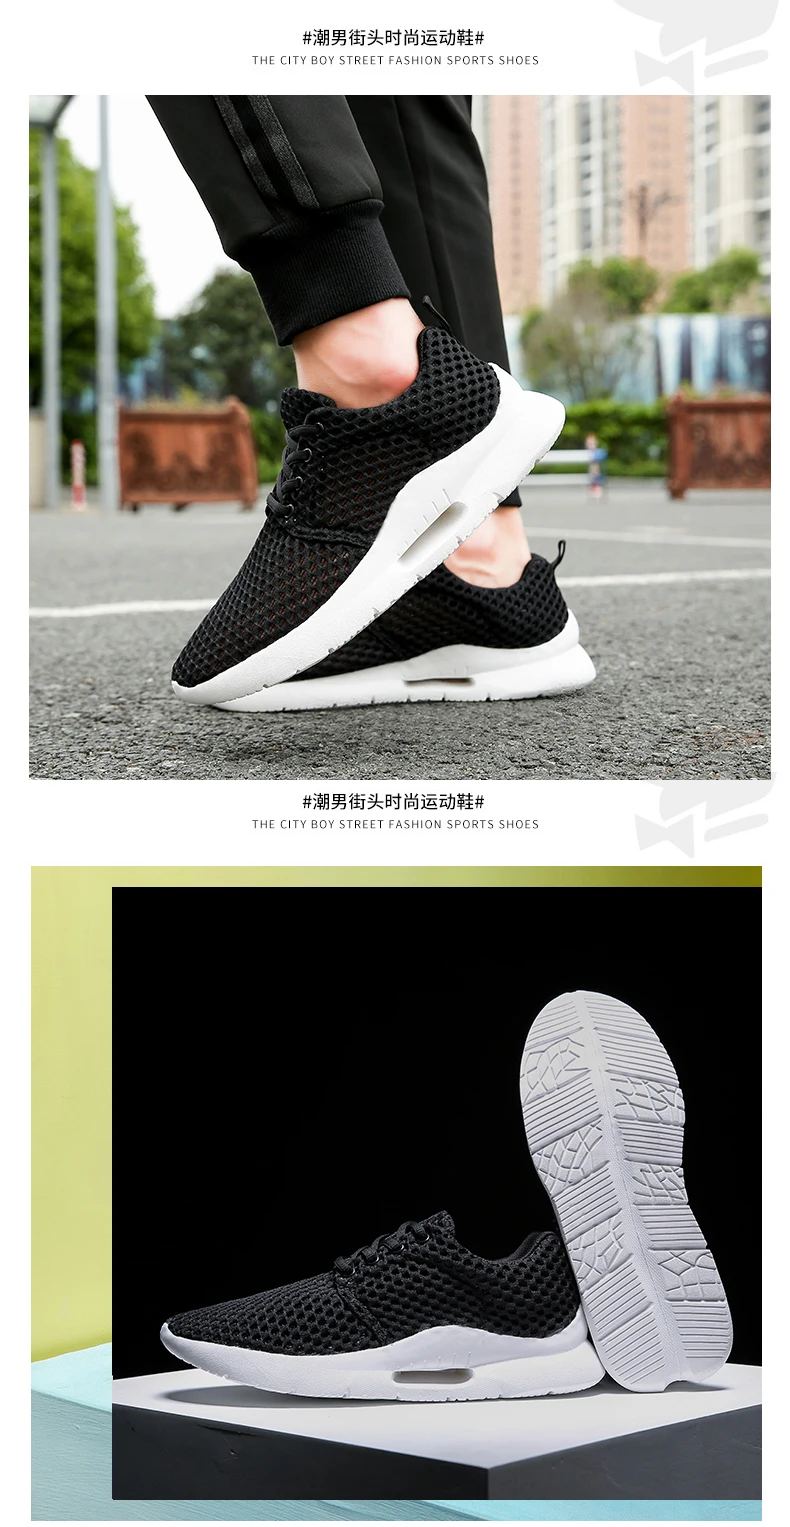 Новинка Tenis Masculino воздухопроницаемые кроссовки для мужчин Спортивная обувь мужские теннисные туфли мужские стабильные спортивные фитнес мужские кроссовки для тренировок дешево